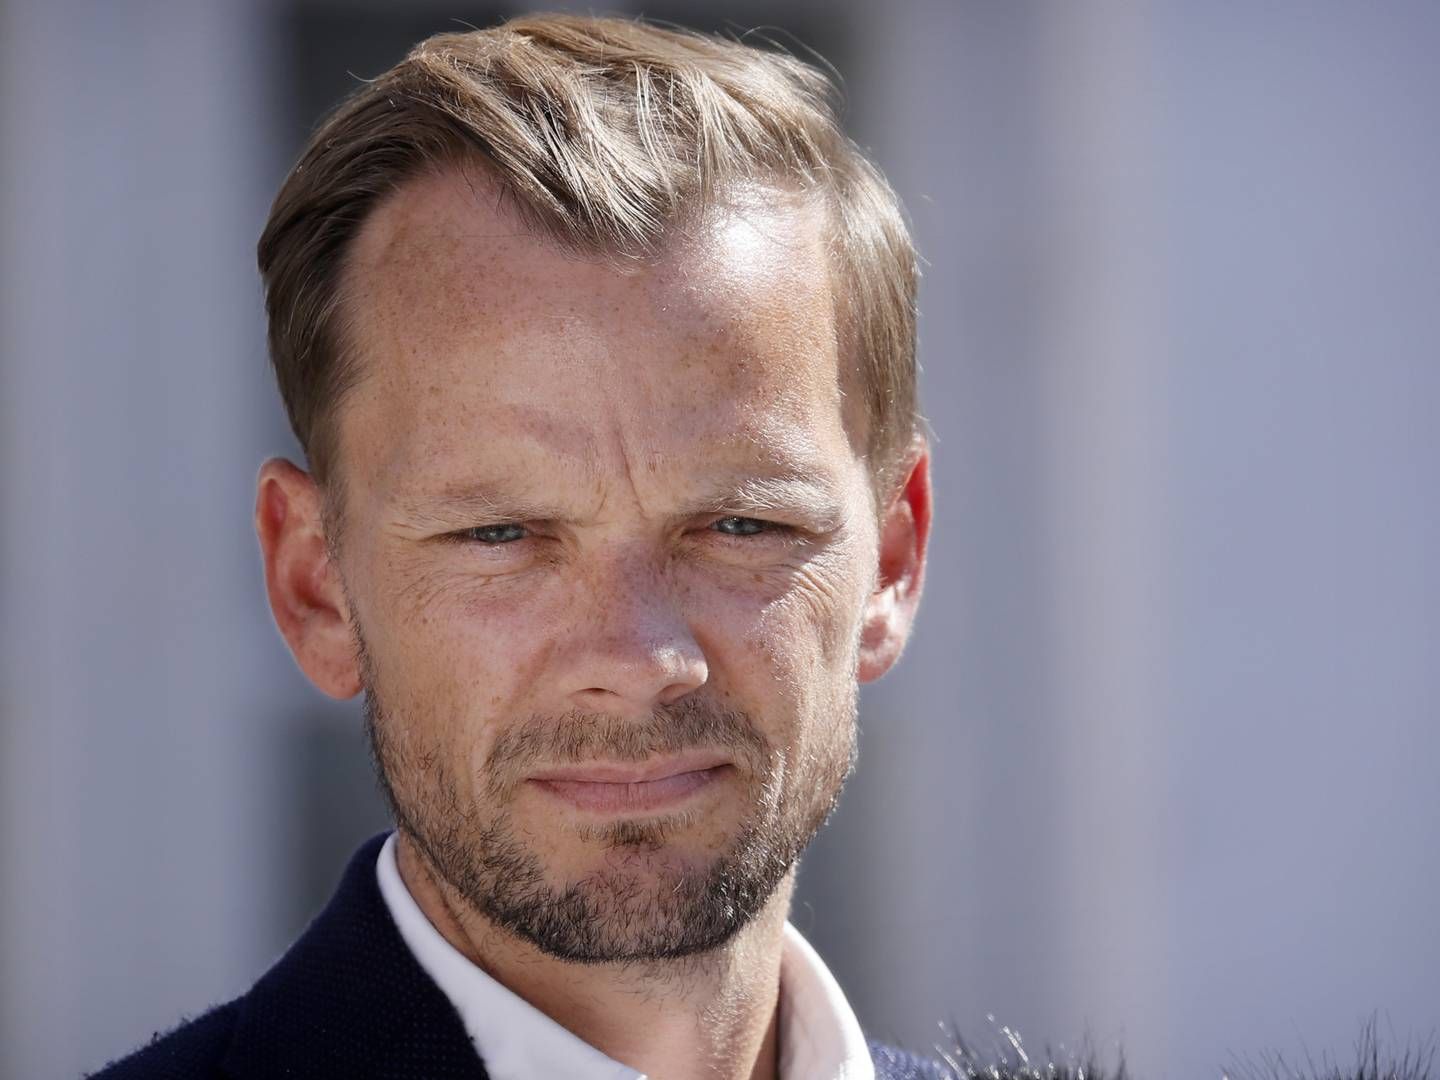 Beskæftigelsesminister og fungerende politisk ordfører Peter Hummelgaard (S) savner blandt andet finansiering i Venstres 2030-plan. | Foto: Jens Dresling